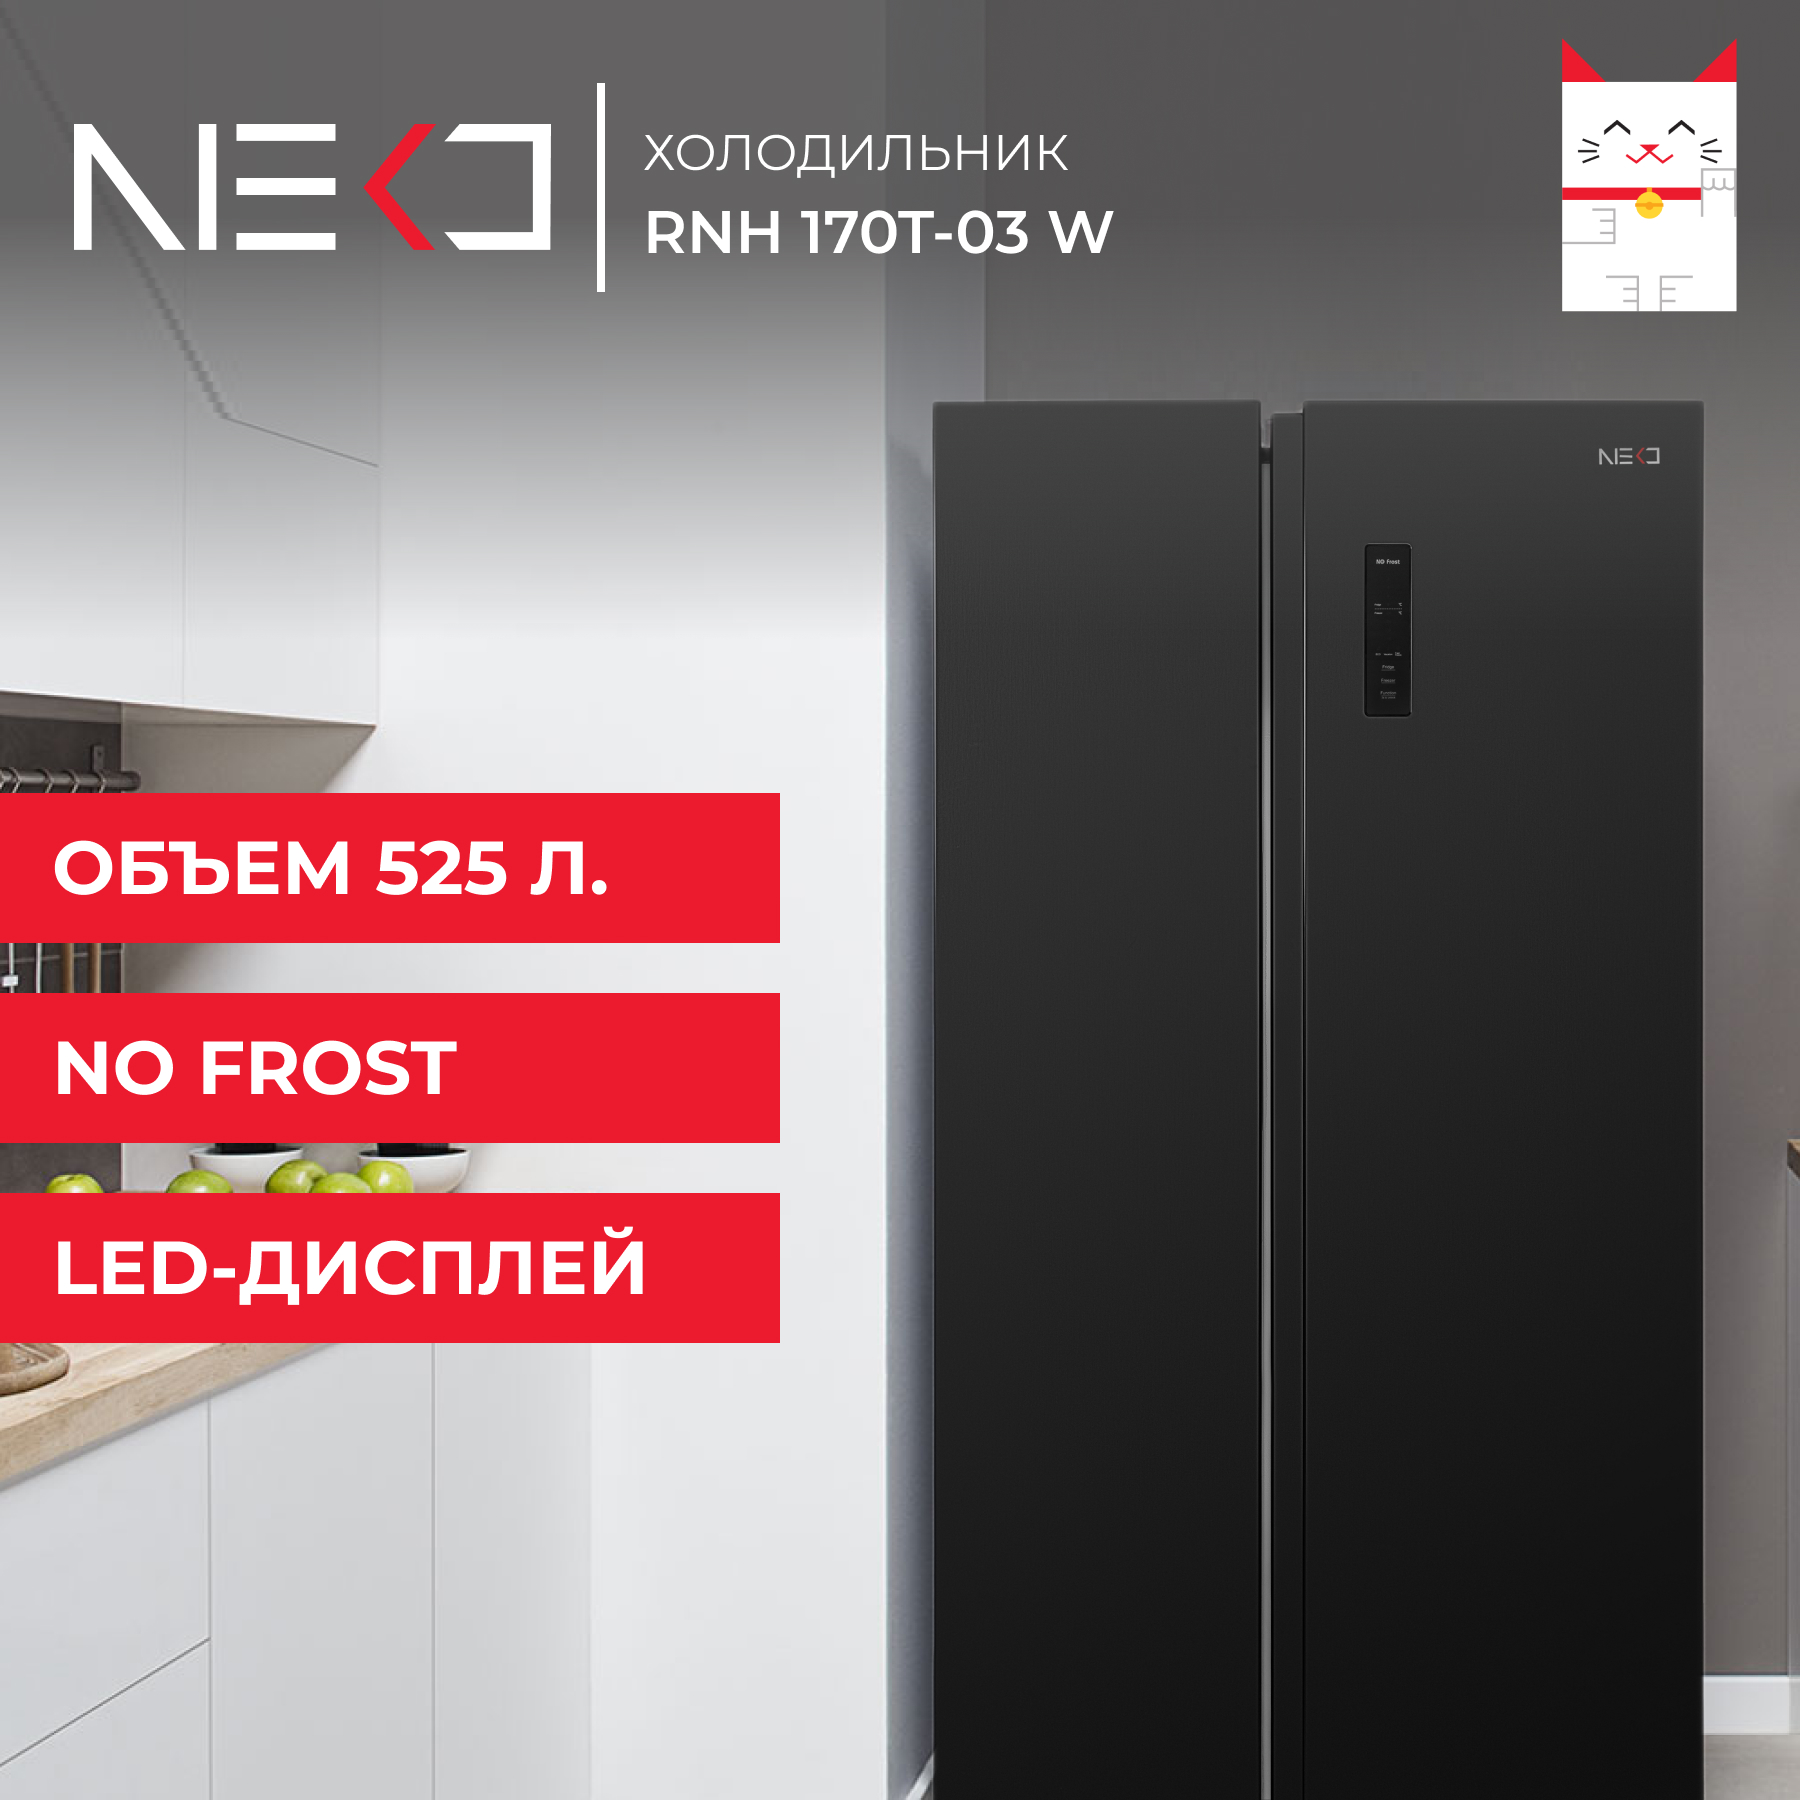 Холодильник Neko RNH 170T-03 W черный холодильник side by side zugel zrss630b